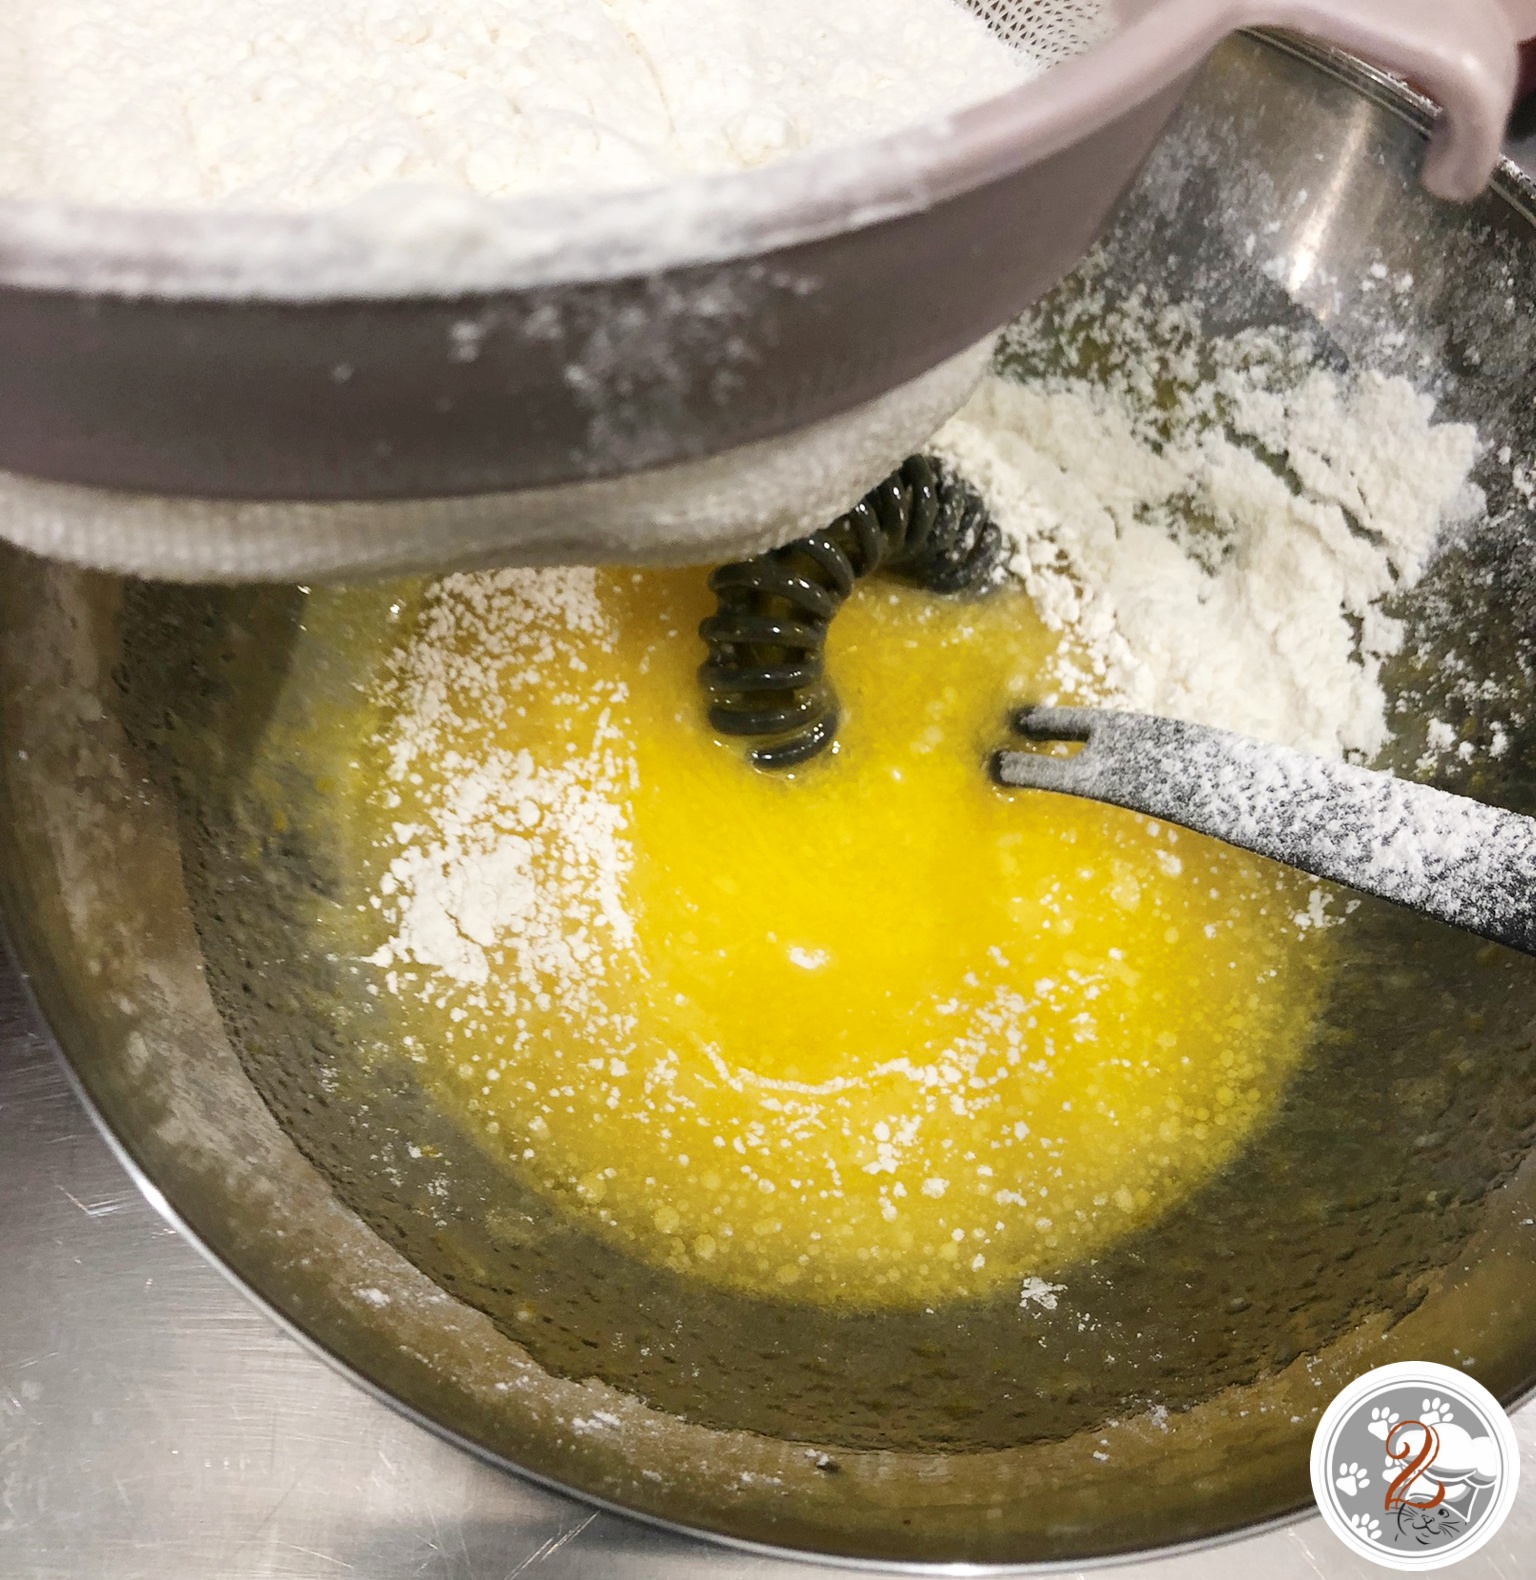 Mescolate le uova con lo zucchero a velo e la scorza di mezzo limone. Aggiungete l’olio e continuate a mescolare. Aggiungete la farina setacciata con il lievito ed impastate prima con la frusta poi quando prende consistenza impastate con le mani fino ad ottenere un panetto morbido e elastico. Imburrate e infarinate una teglia per crostate e disponeteci all’interno la frolla. Bucherellate la base con i rebbi di una forchetta e infornate 180° per 25 minuti. Nel frattempo preparate la crema al limone. Frullate con un minipimer il succo dei limoni, lo zucchero, le uova e l’amido. Versate il composto in un tegamino con il latte caldo e cuocete a fuoco bassa , mescolando spesso, fino a che diventera’ una crema. Mettete a freddare coperta da pellicola. Riprendete la base della crostata e versata la crema livellandola in maniera uniforme. Decorate a piacere con le fragole, le fettine di limone e spolverizzate di zucchero a velo.